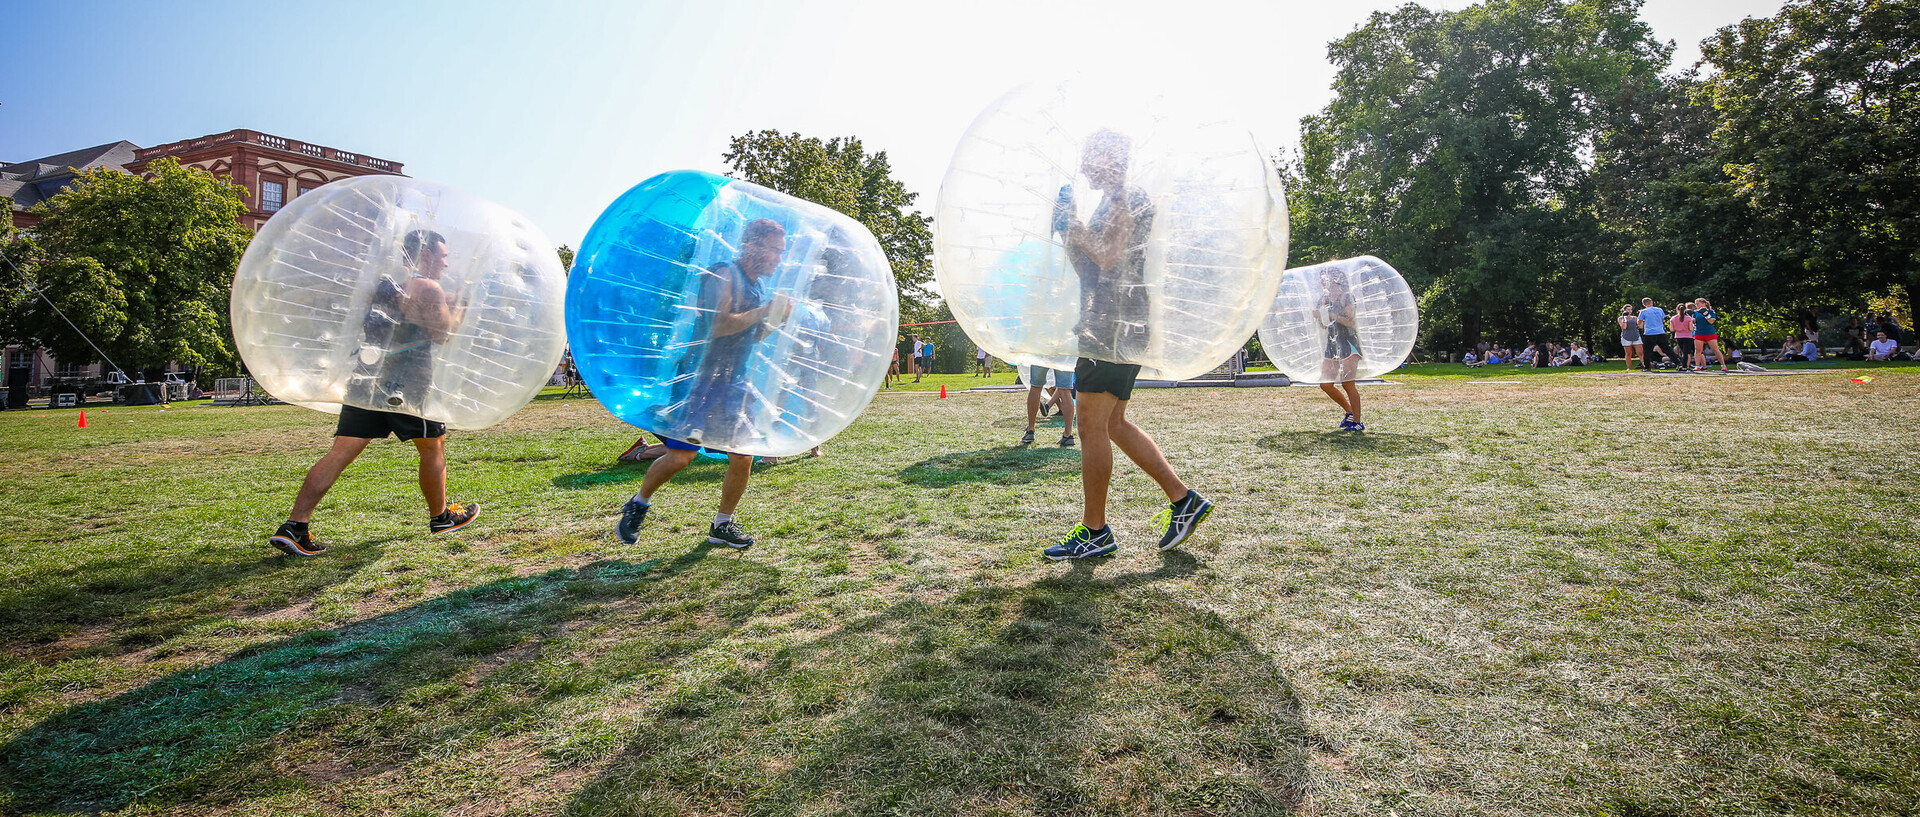 Sportler spielen Bubble-Fußball auf einer Wiese